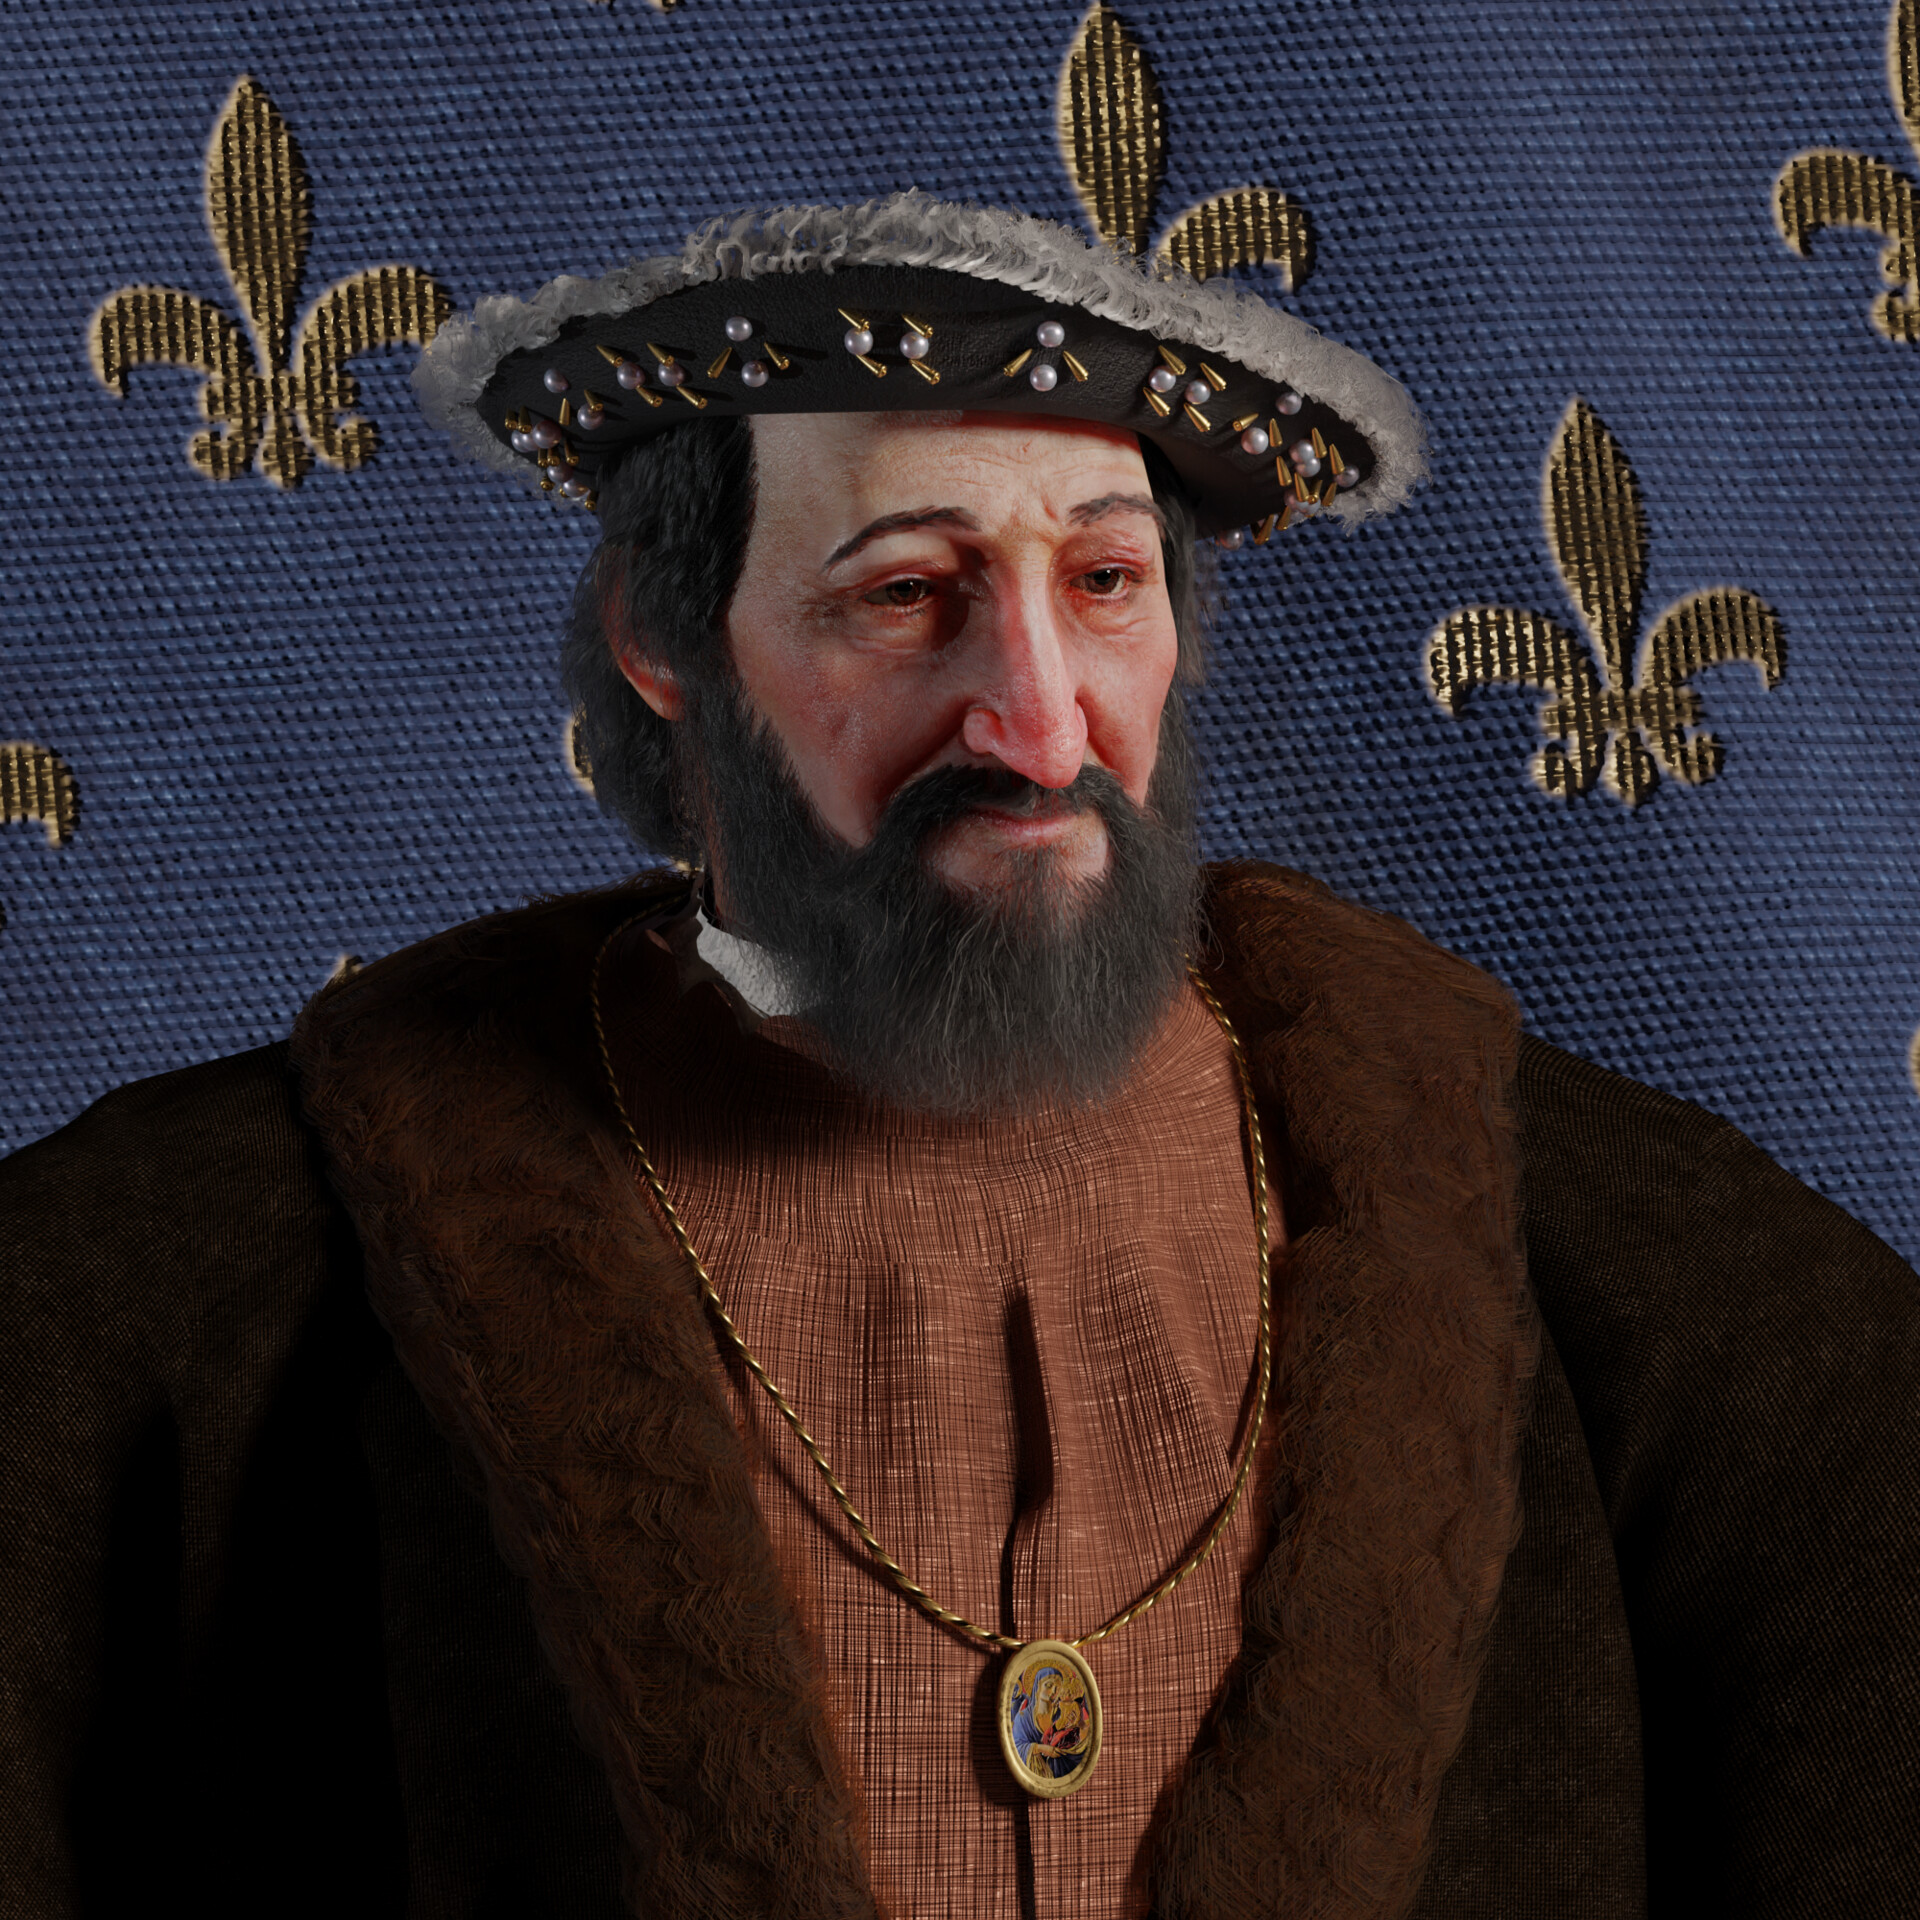 Francis I, King of France (1494-1547) - Wikidata